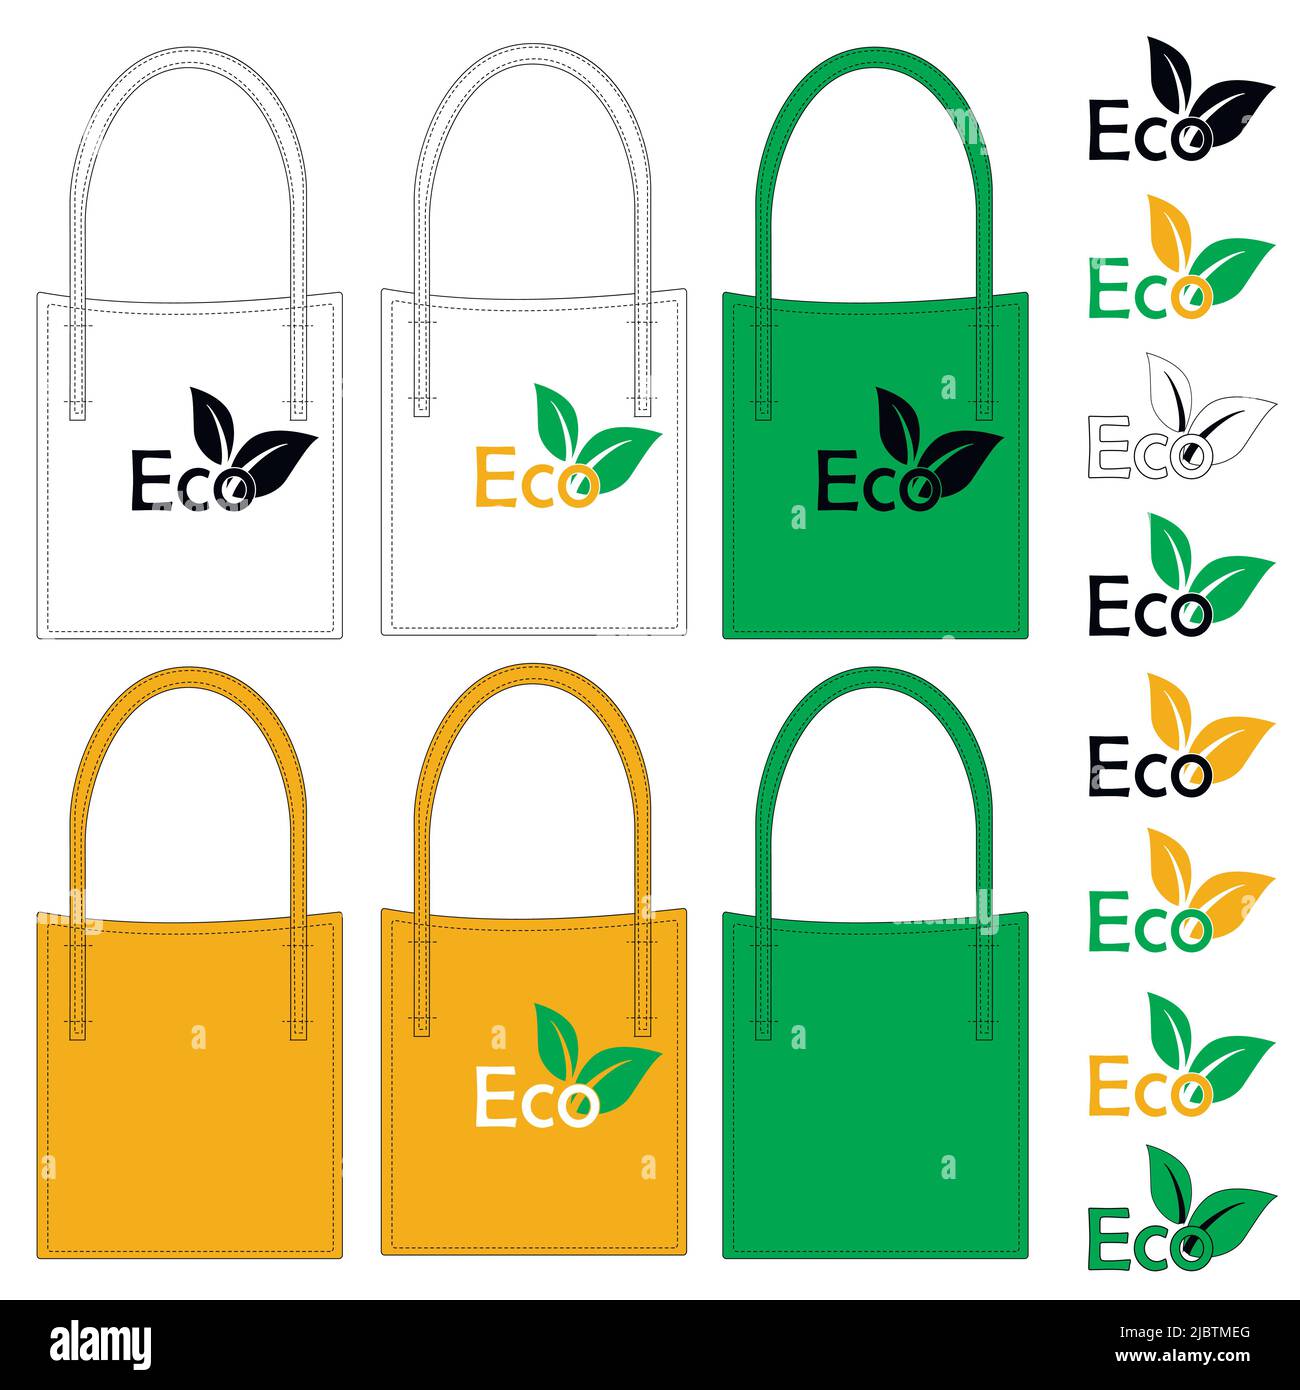 Öko-Beutel mit Gemüse und Obst. Abbildung eines Umweltprodukts, das zum Recycling verwendet wird, als Beispiel für den Umweltschutz. Stock Vektor